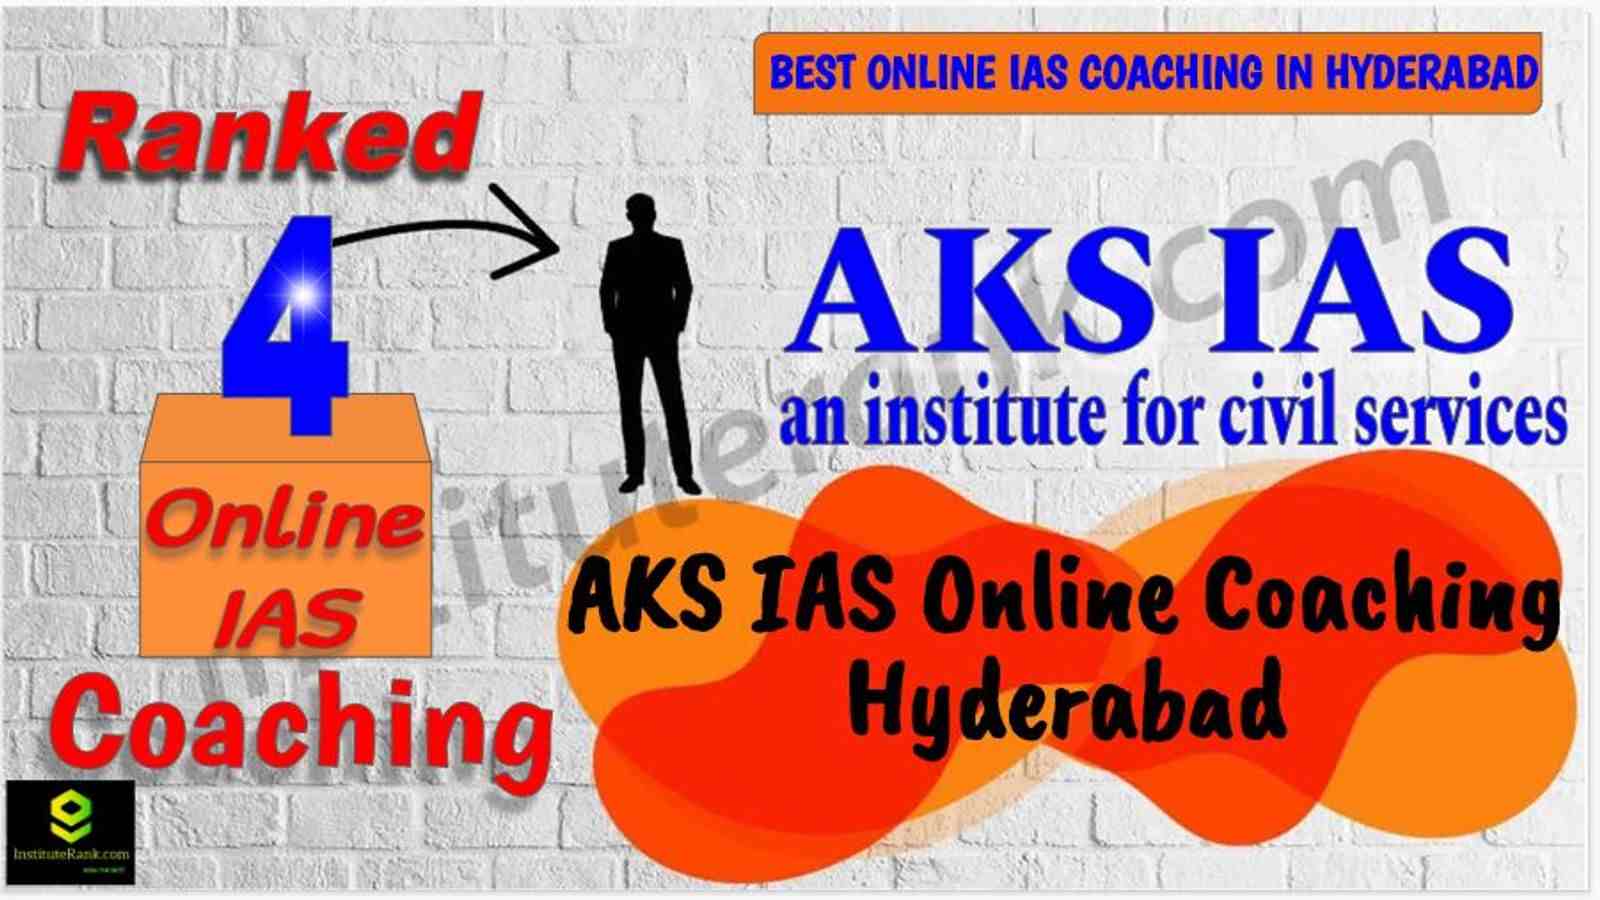 Top Online IAS Coaching in Hyderabad